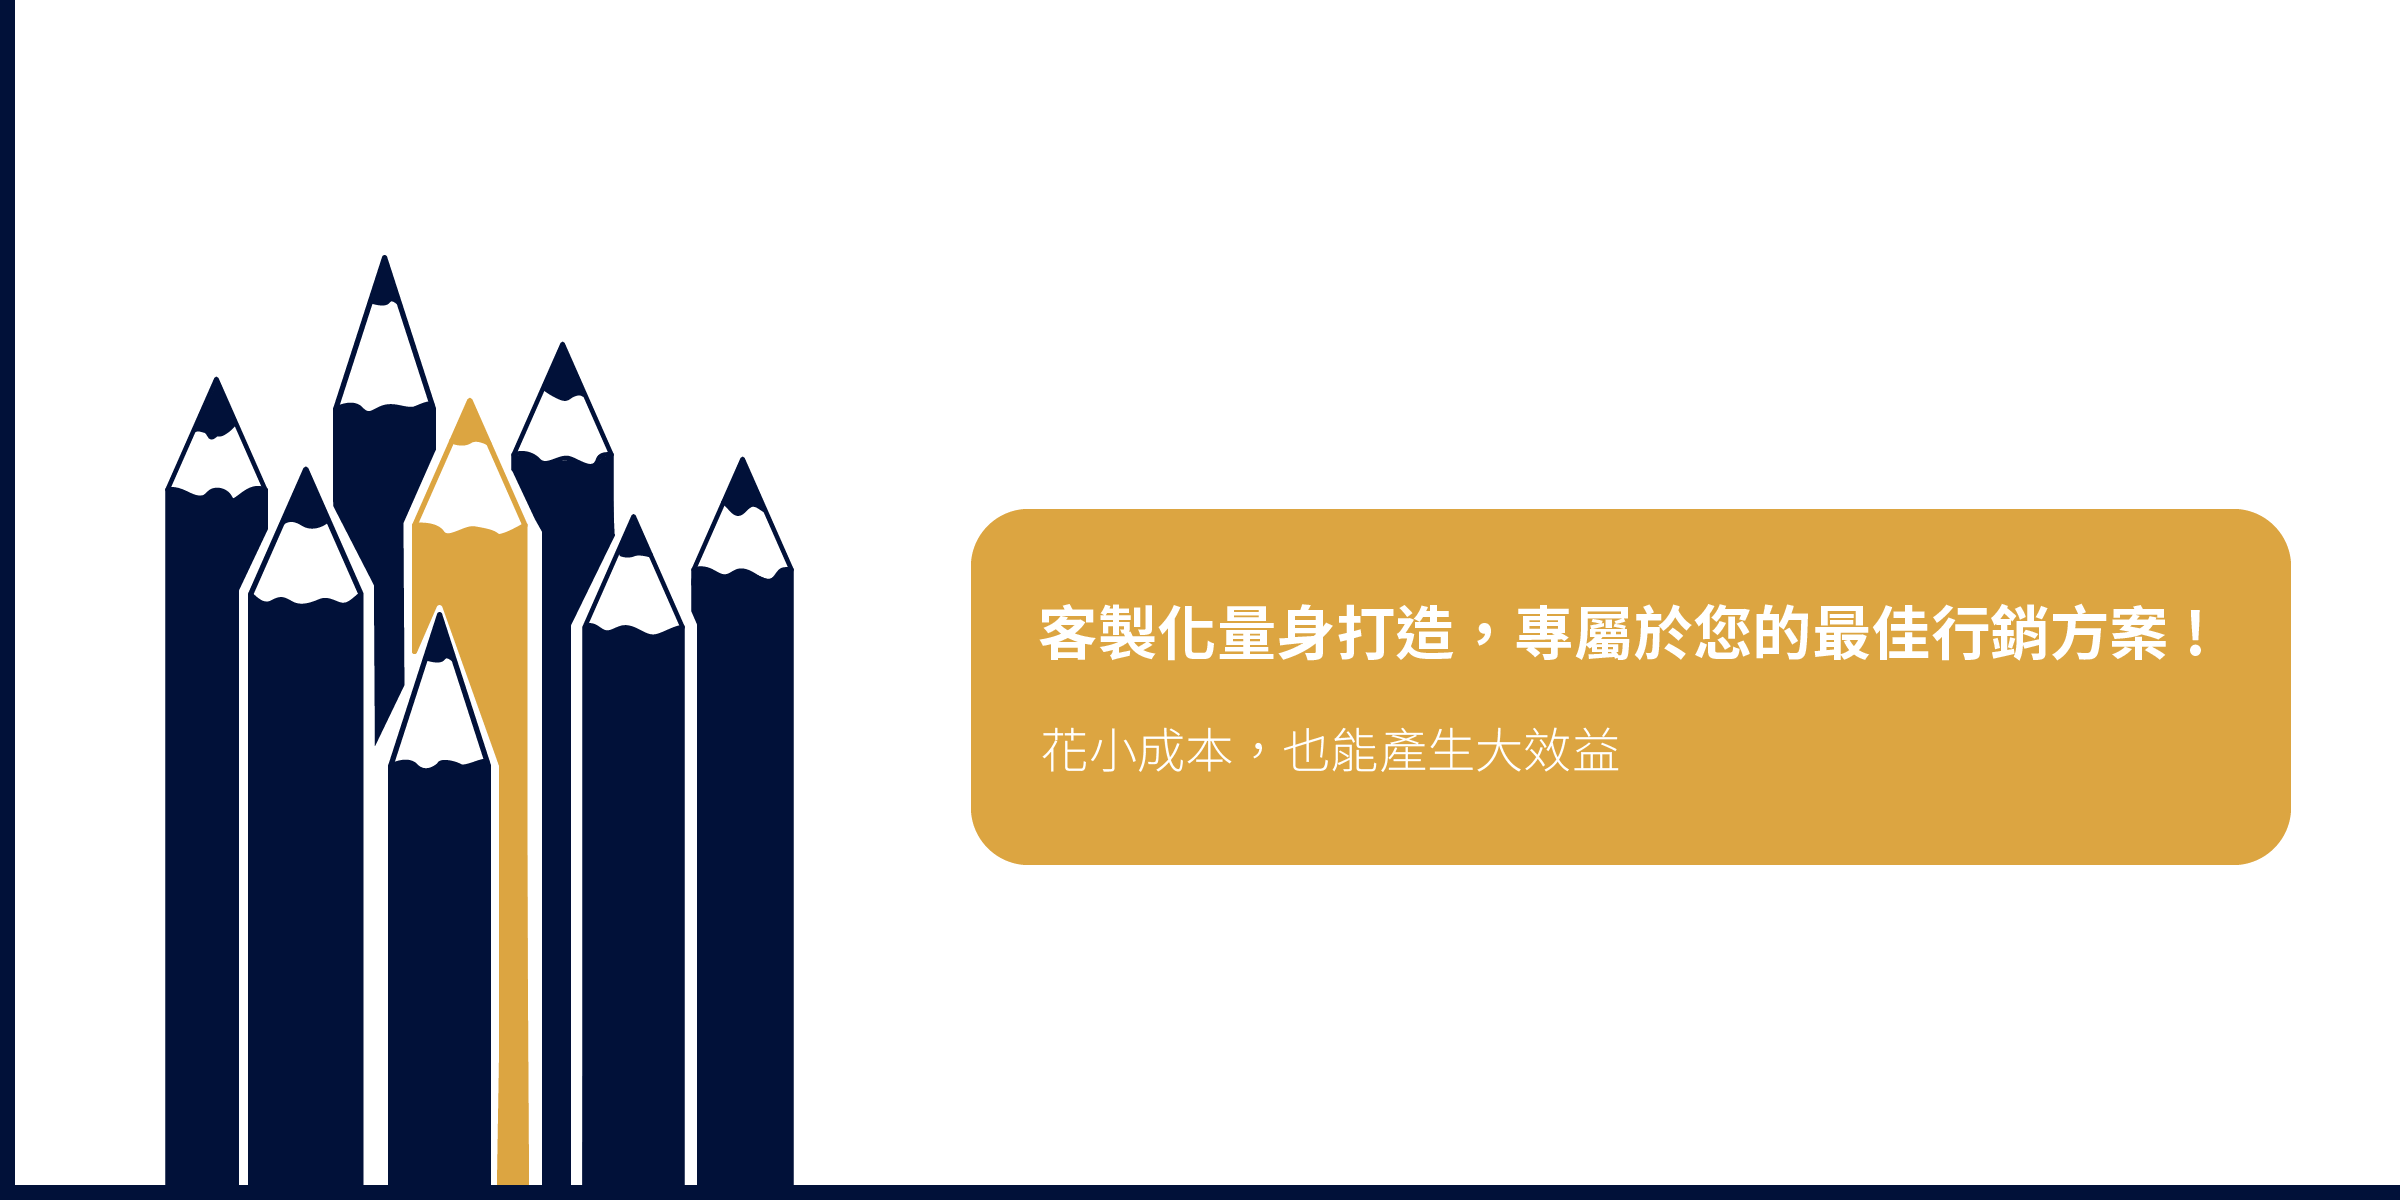 智泉行銷顧問公司的首頁banner